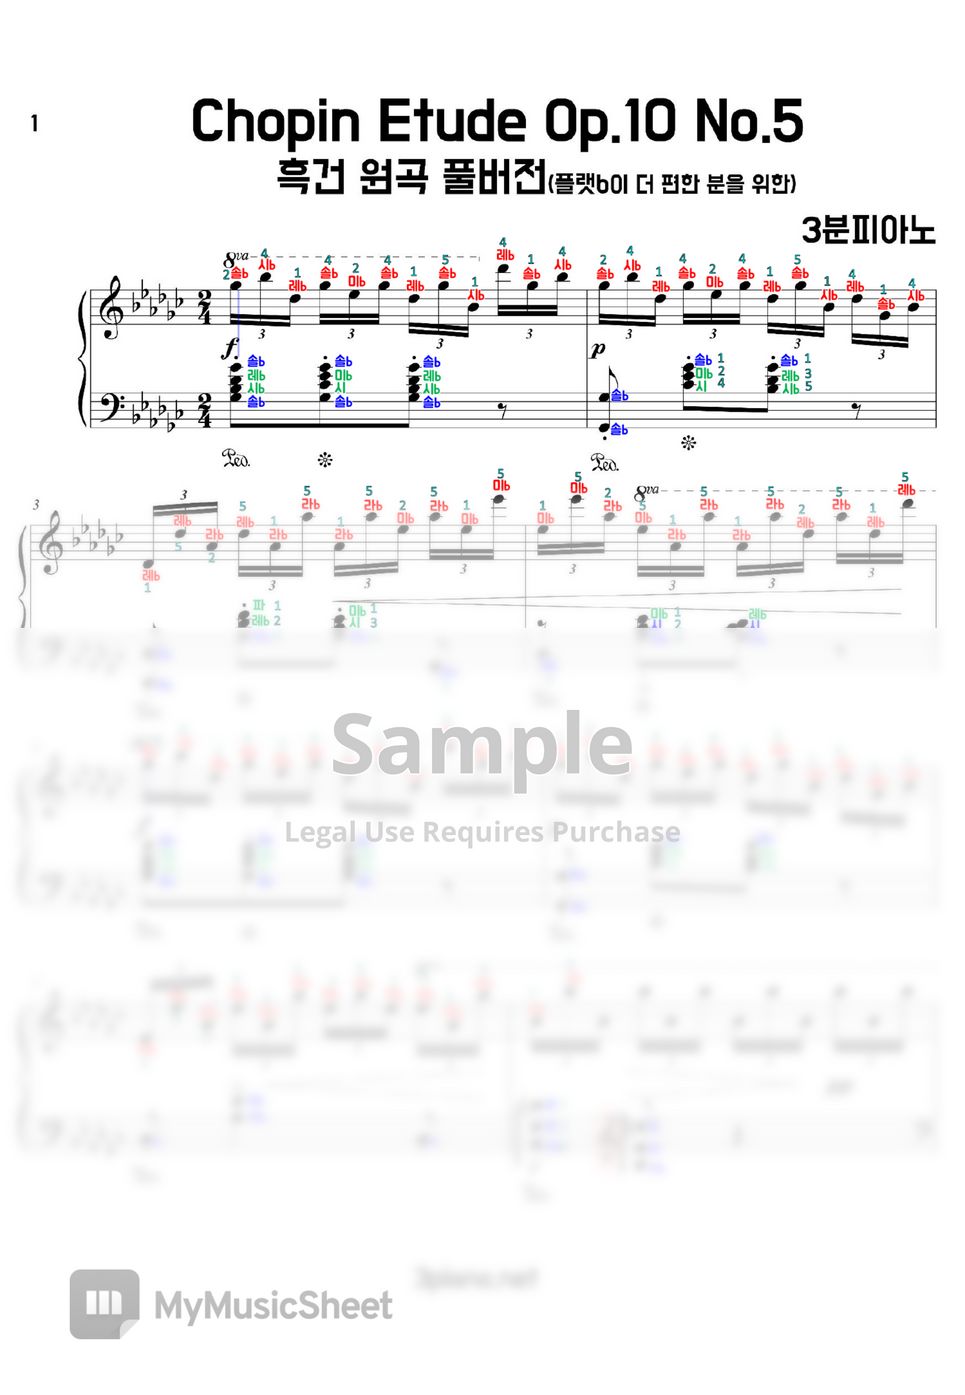 Chopin - etude op.10 no.5(플랫b이 편한 분들을 위한) (계이름악보) by 3분피아노